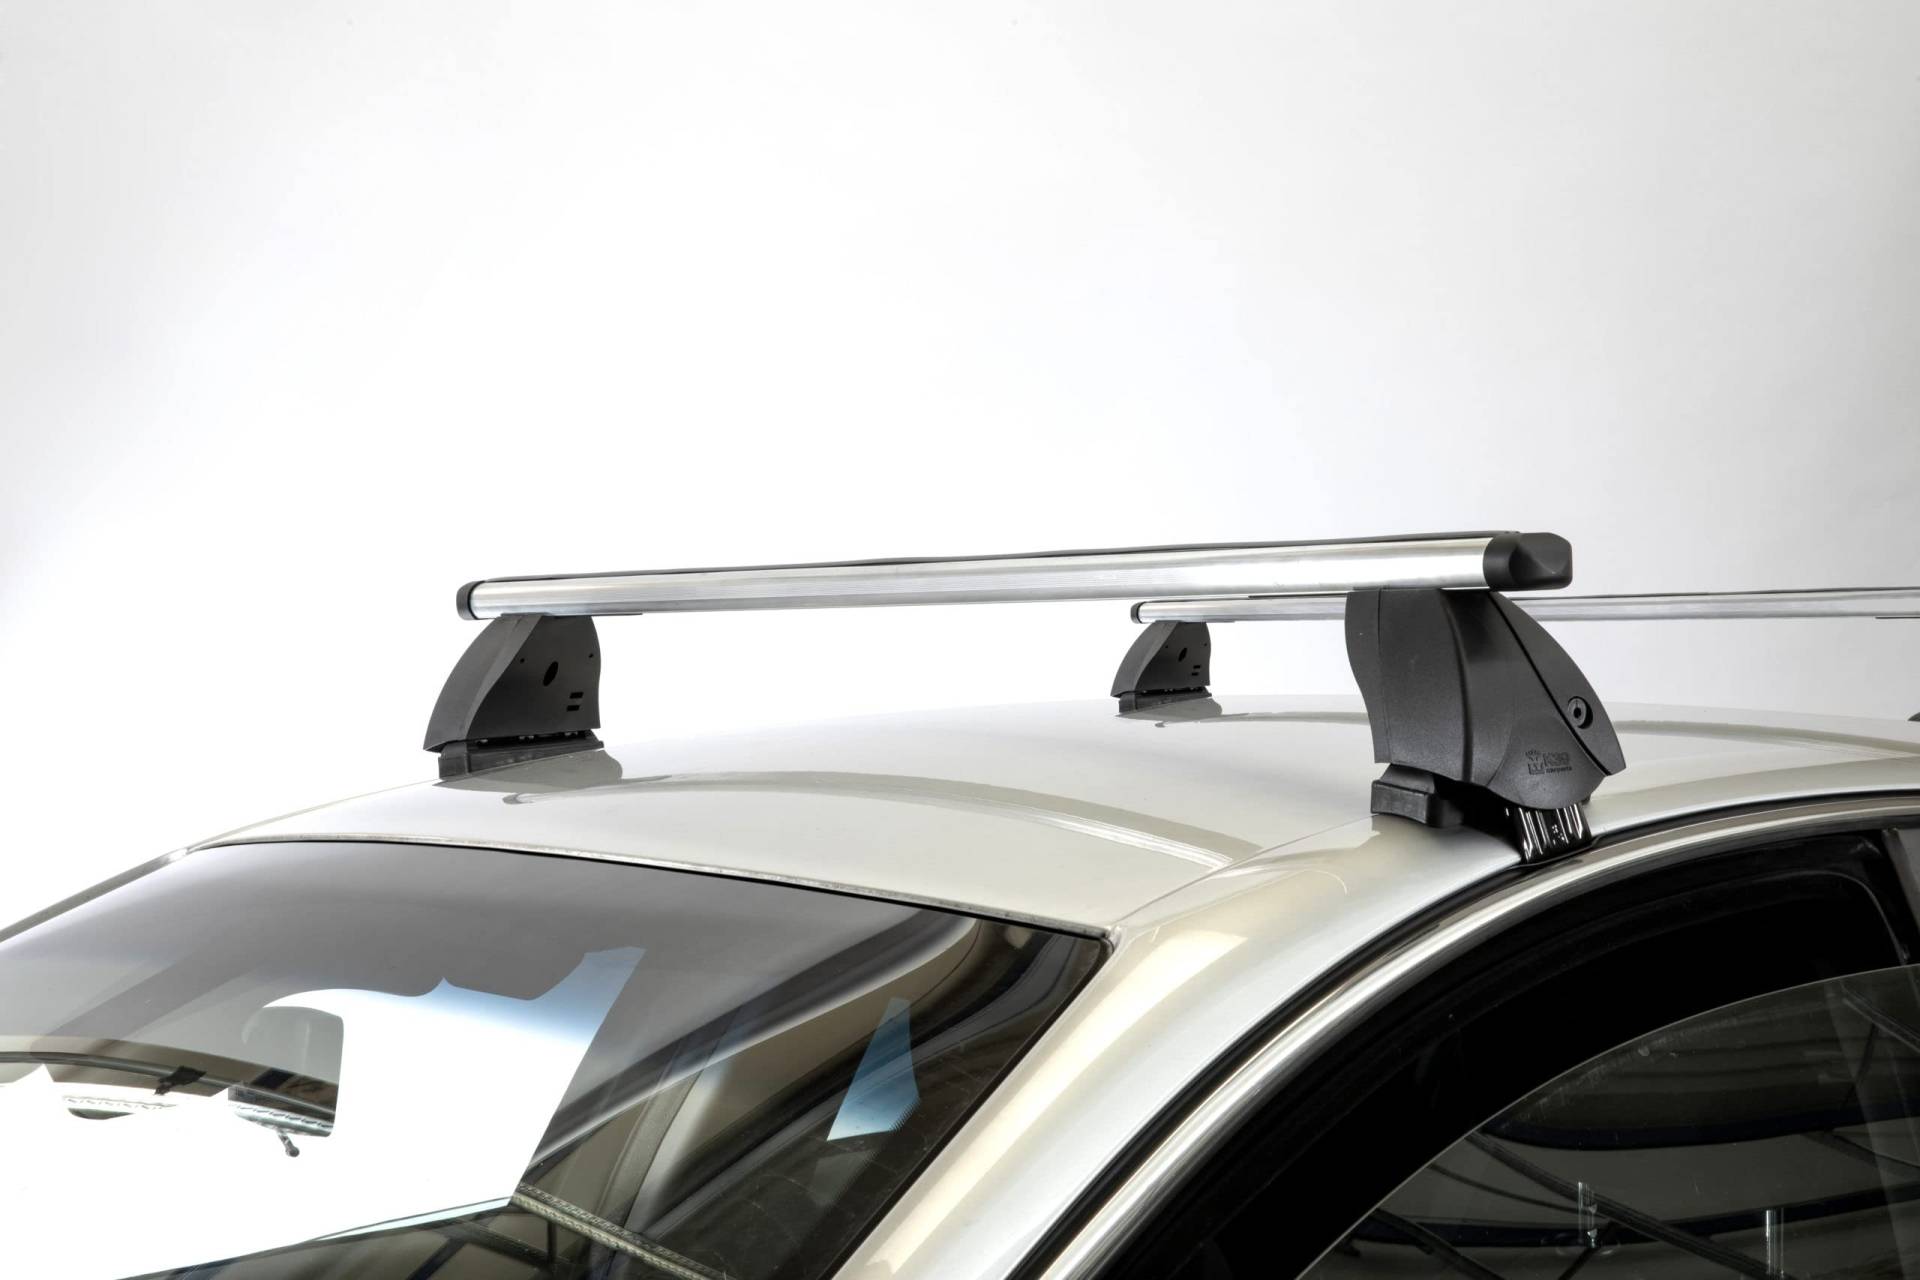 RIC-K1 PRO ALU Dachträger aus Aluminium für Toyota HILUX (5-Türer) ab 2015 mit Standarddach - TÜV-GS-geprüft von TEMA..